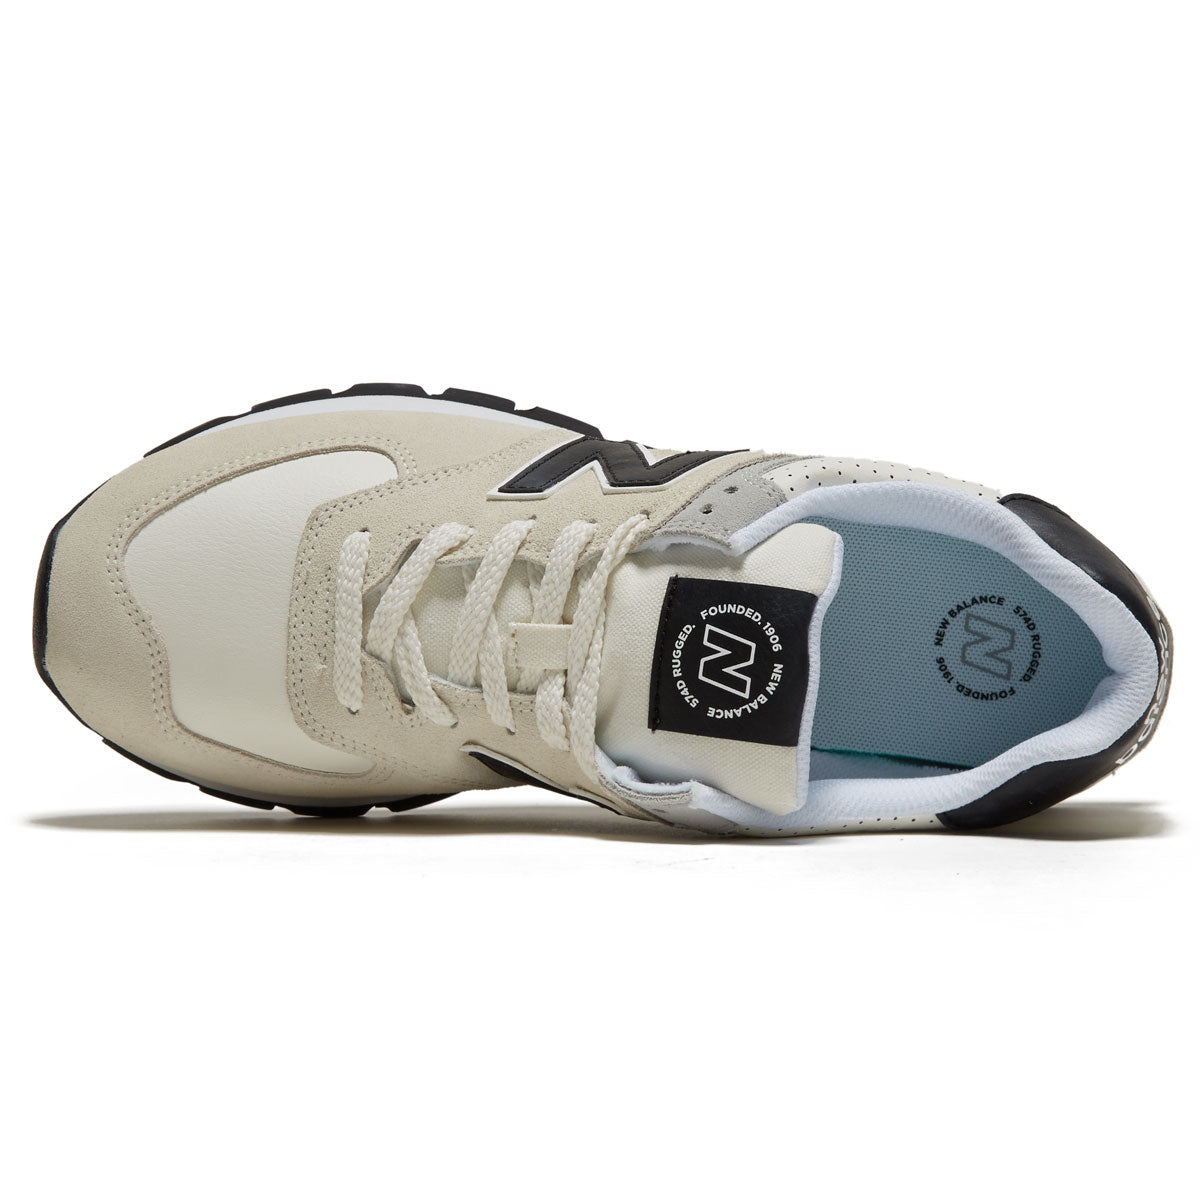 New Balance 574 Rugged Shoes - White/Black image 3